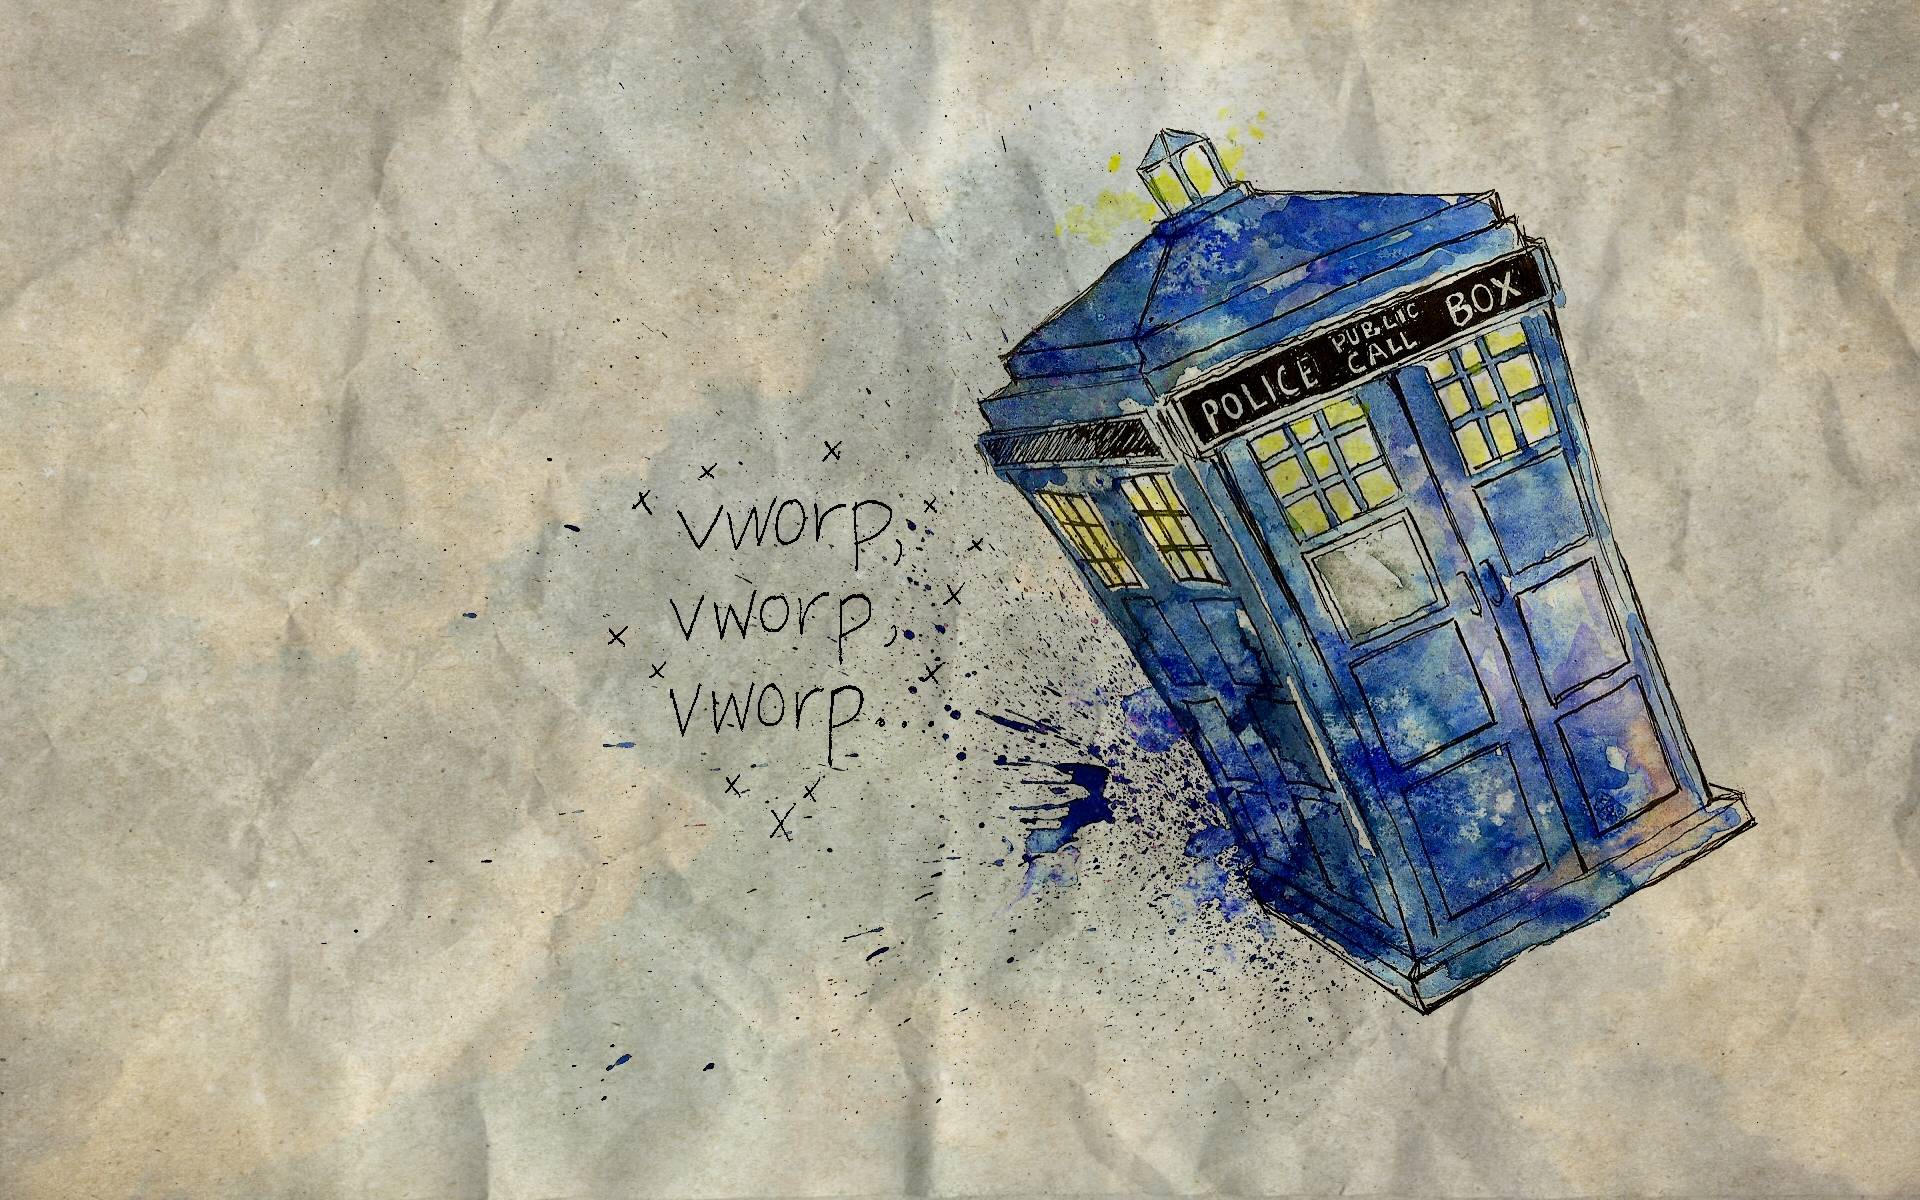 Doctor Who Wallpaper ○♦○. ღ • Aberrant Rhetoric • ღ